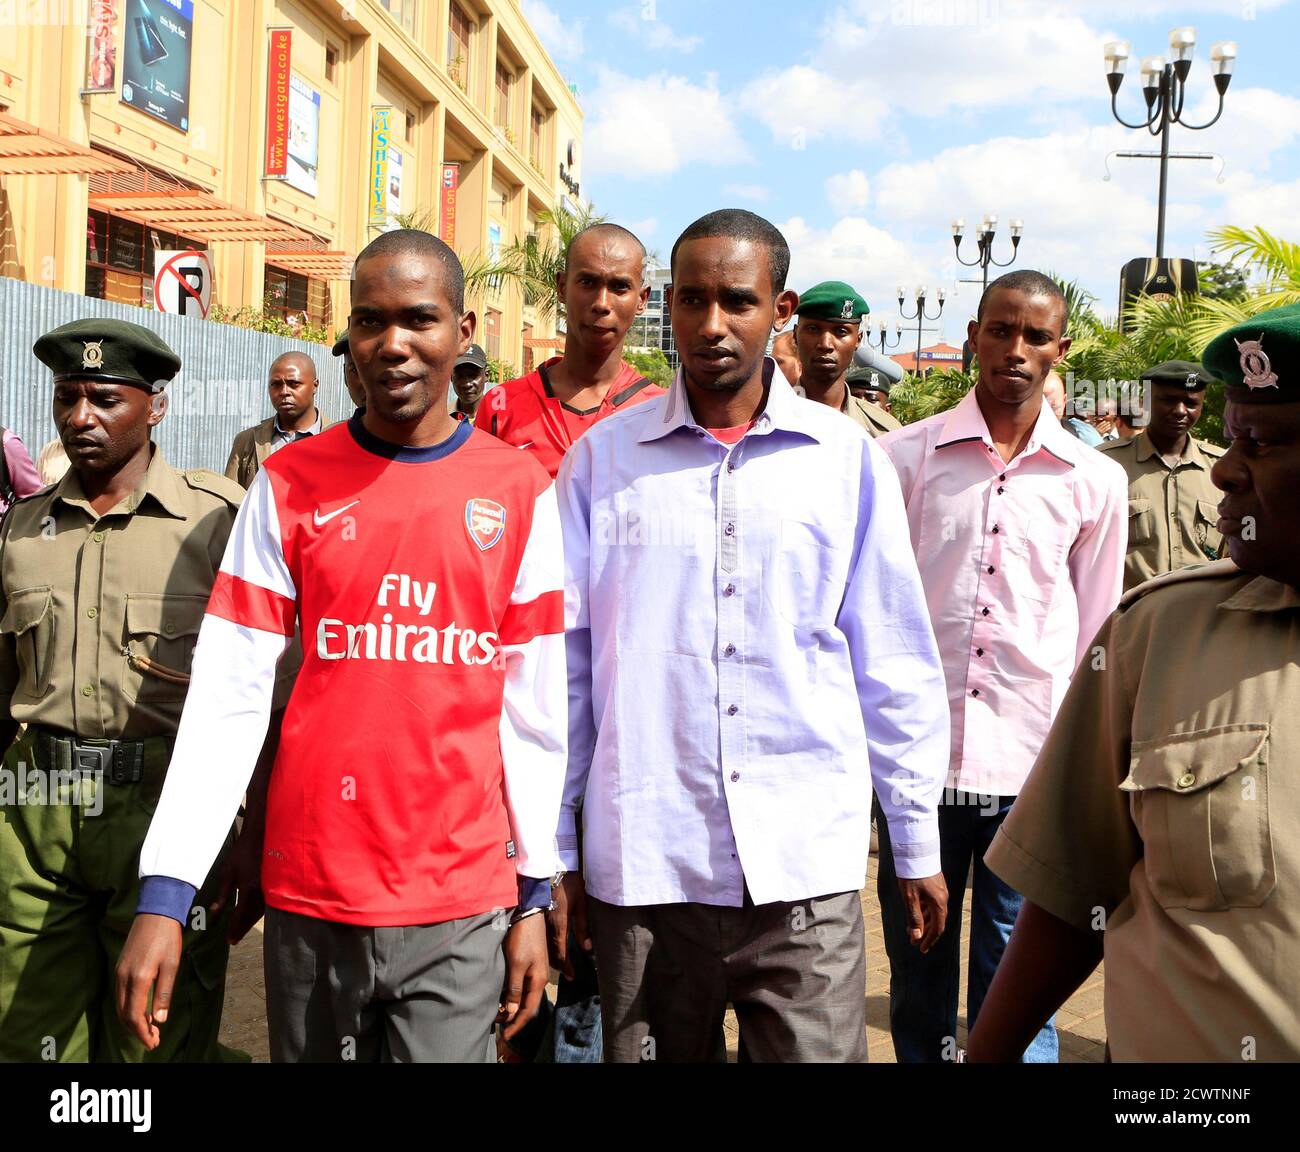 Les quatre hommes accusés d'avoir aidé des militants liés à Al-Qaïda à lancer une attaque sur le centre commercial Westgate, (de L) Mohamed Ahmed Abdi, Liban Abdullah Omar, Adan Mohamed Ibrahim et Hussein Hassan, sont escortés par des gardiens de prison lors d'une session judiciaire à Nairobi le 21 janvier 2014. Le procès des quatre hommes somaliens, accusés de soutenir et d'abriter des hommes armés qui ont tué au moins 67 personnes lors de l'assaut sur le complexe Westgate de Nairobi qui a commencé le 21 septembre 2013, a commencé la semaine dernière. L'assaut a été revendiqué par le groupe rebelle islamiste somalien Al Shabaab. REUTERS/Noor Khamis (KENYA - Tags: CIVIL Banque D'Images